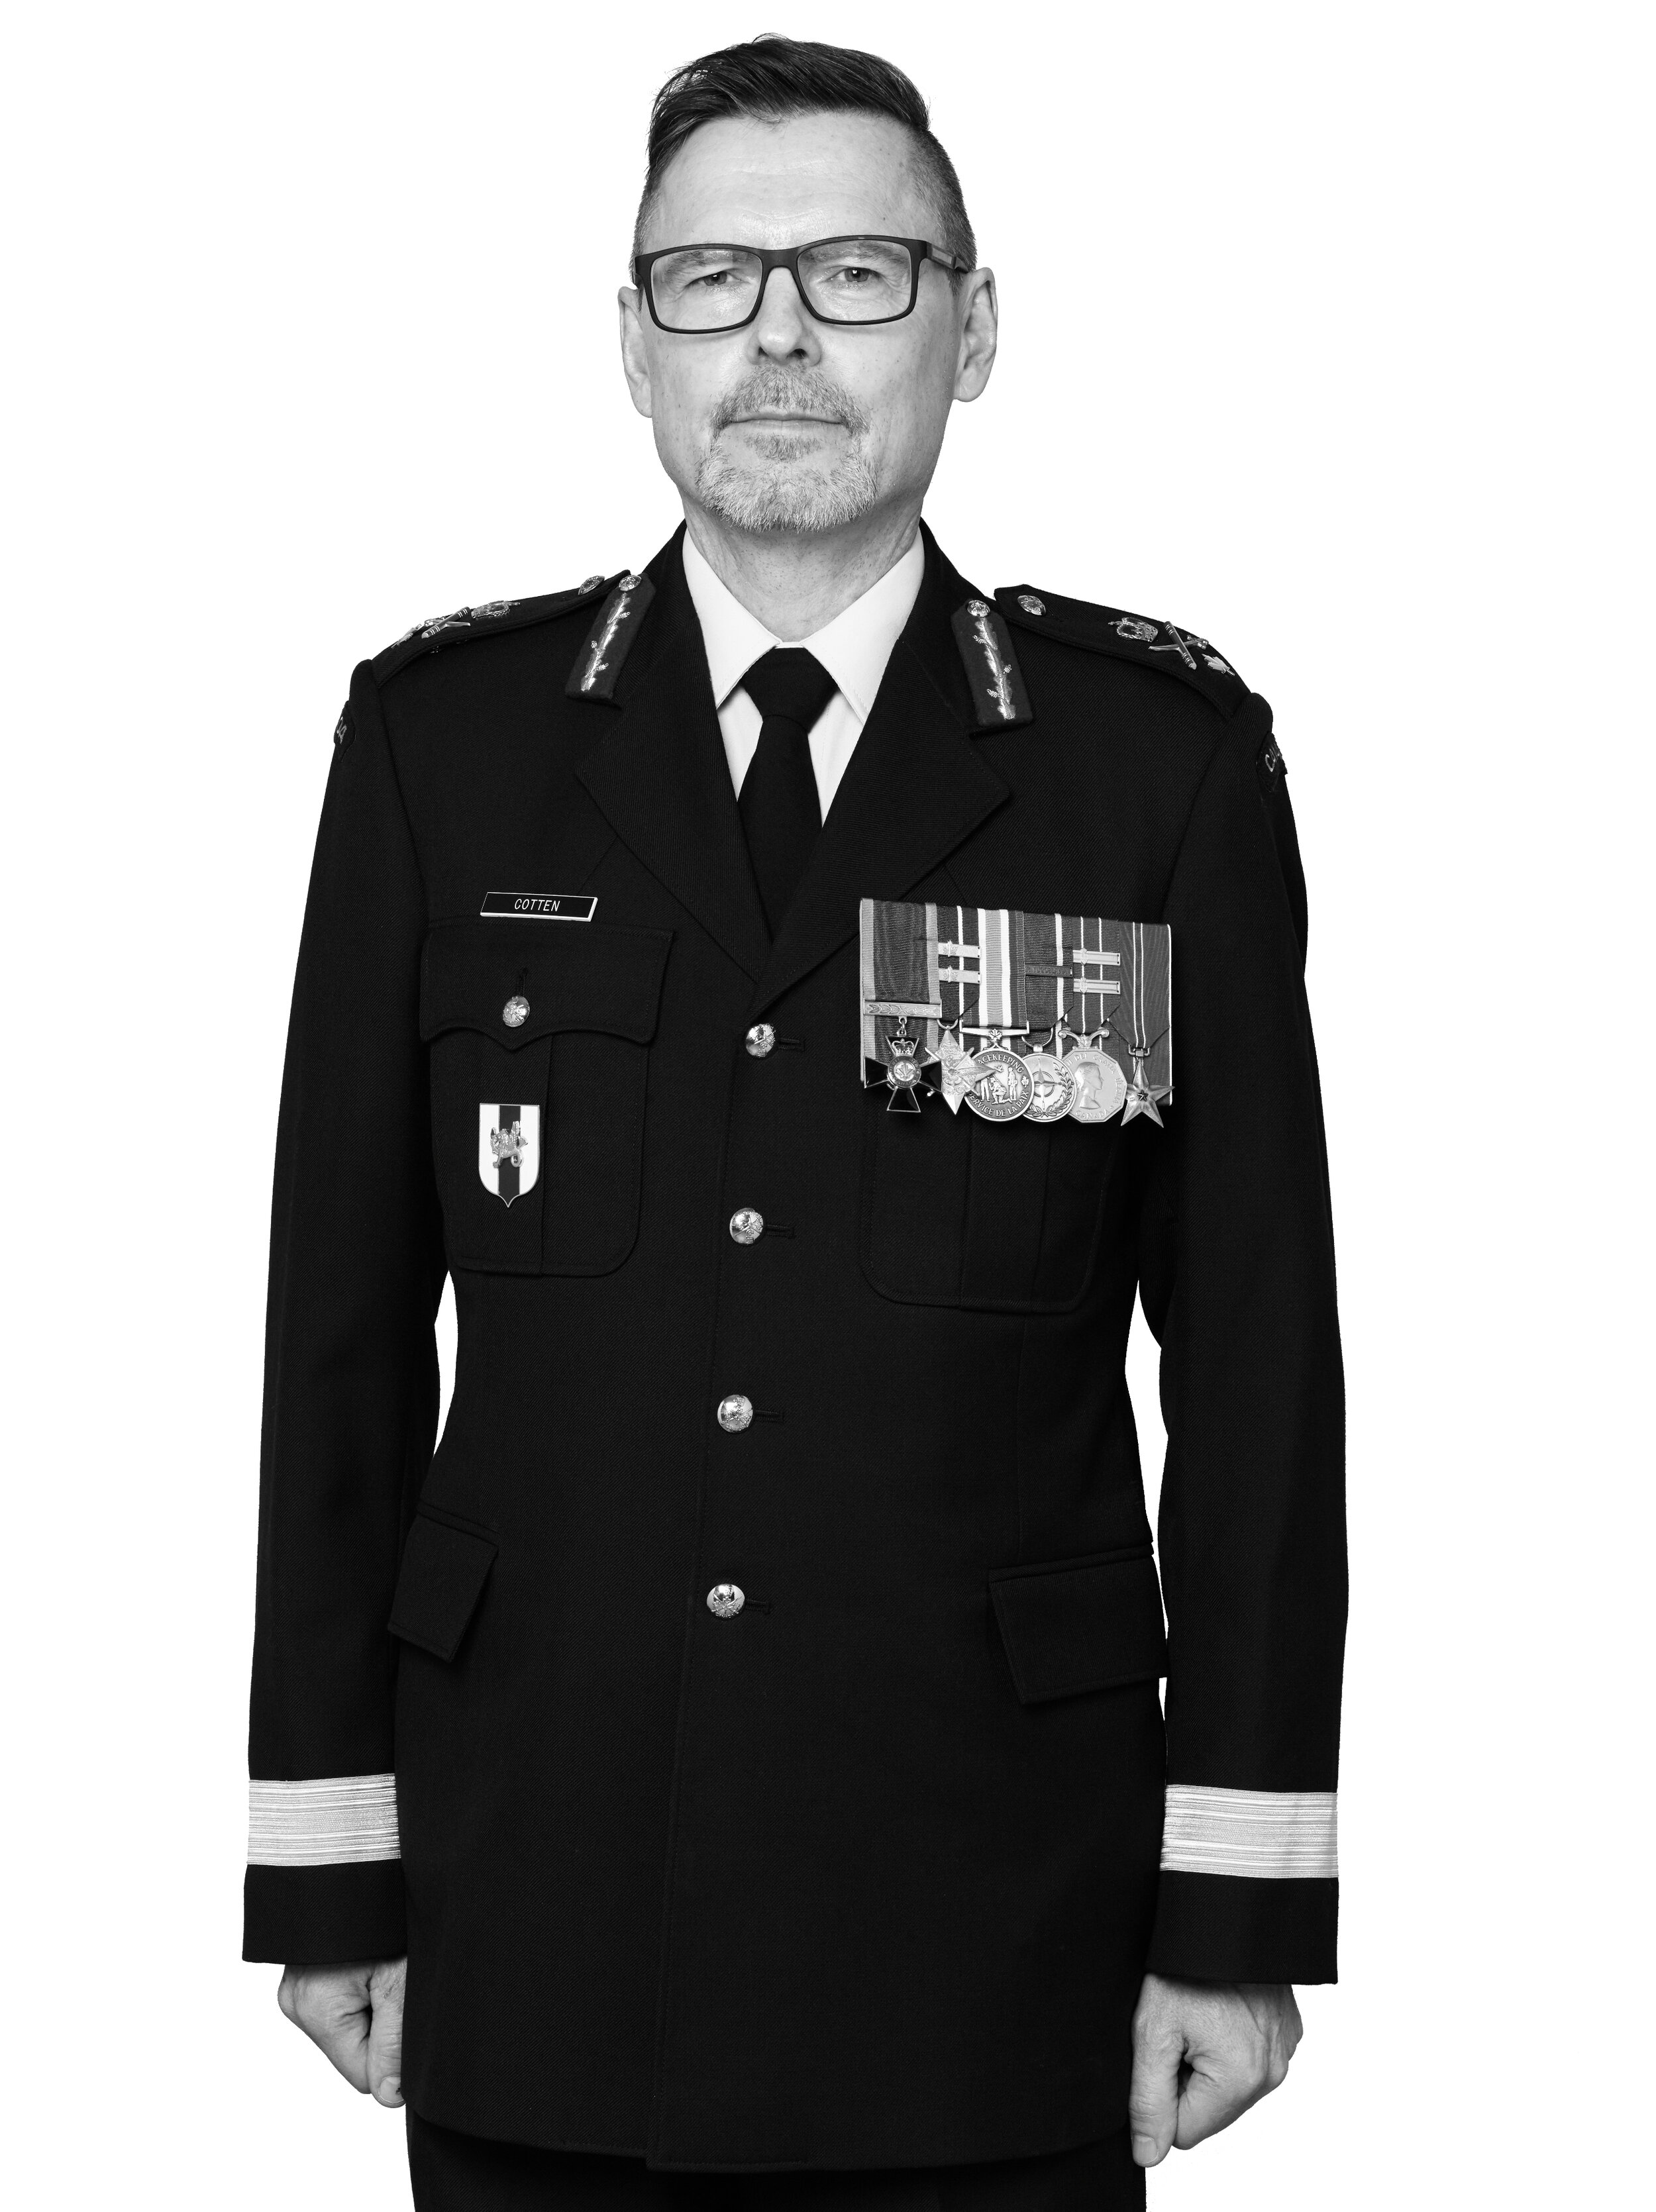 Brigadier-General Kevin Cotten - Retired